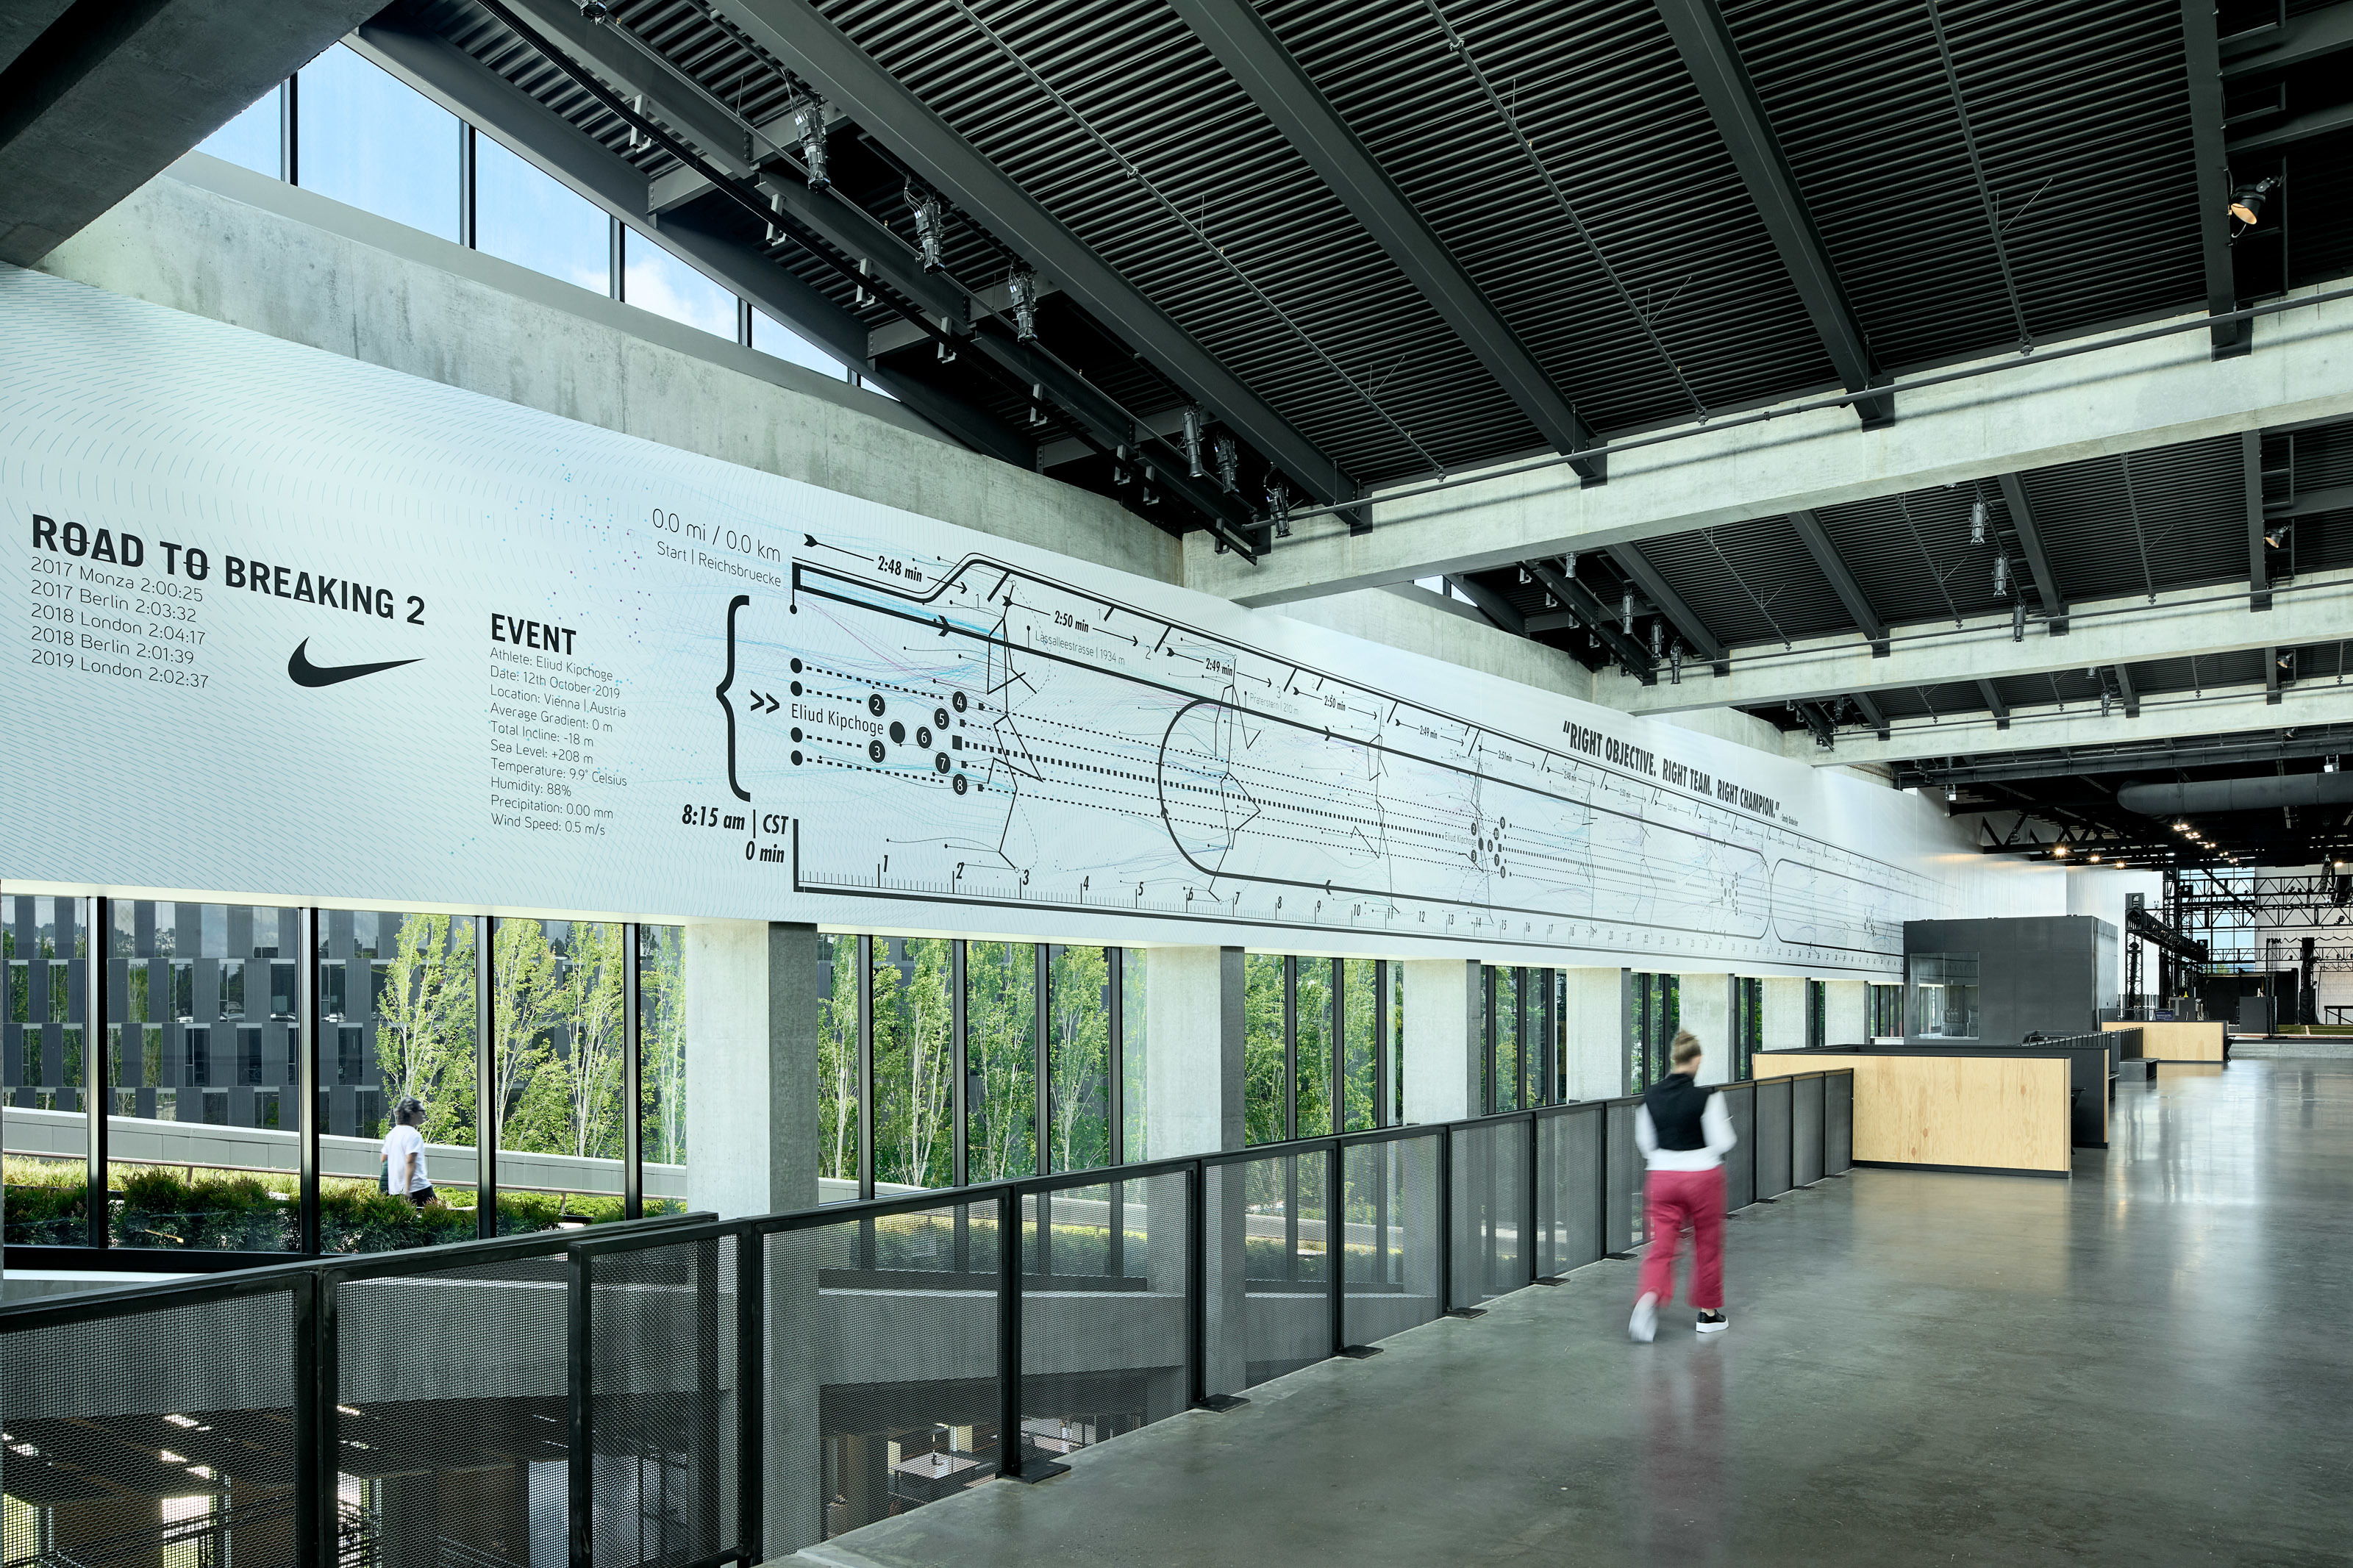 LeBron James Innovation Center at Nike World Headquarters, Designed by Olson Kundig - Imagery courtesy of Nike